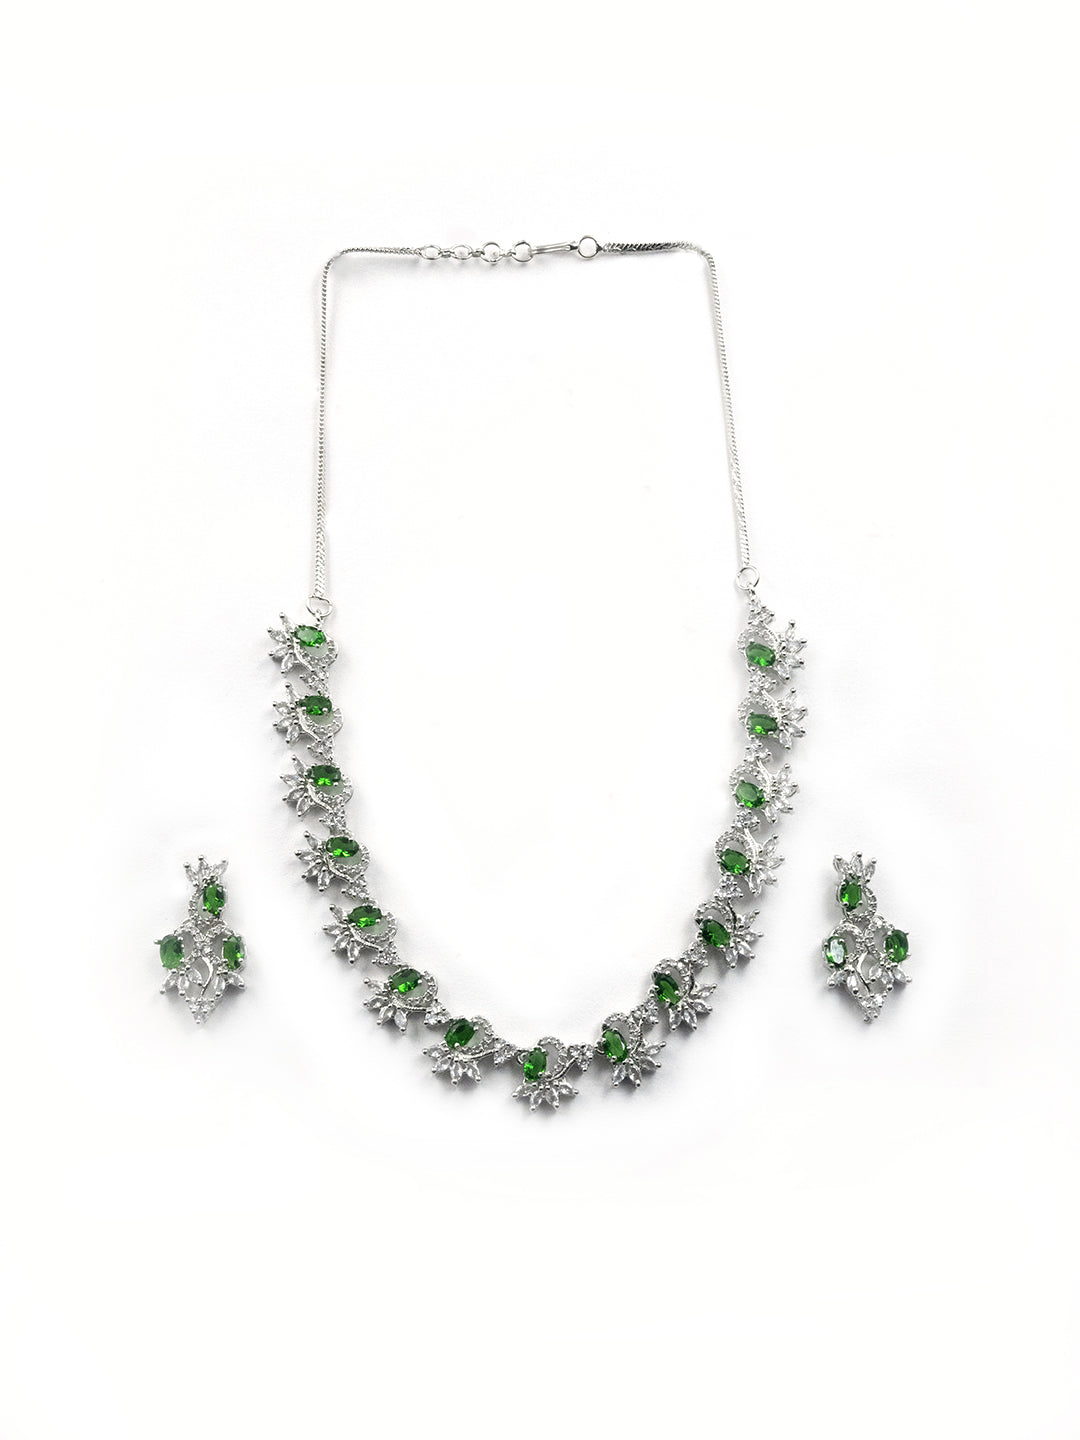 Women's Graceful American Diamond Necklace Set with Earrings - StileAdda